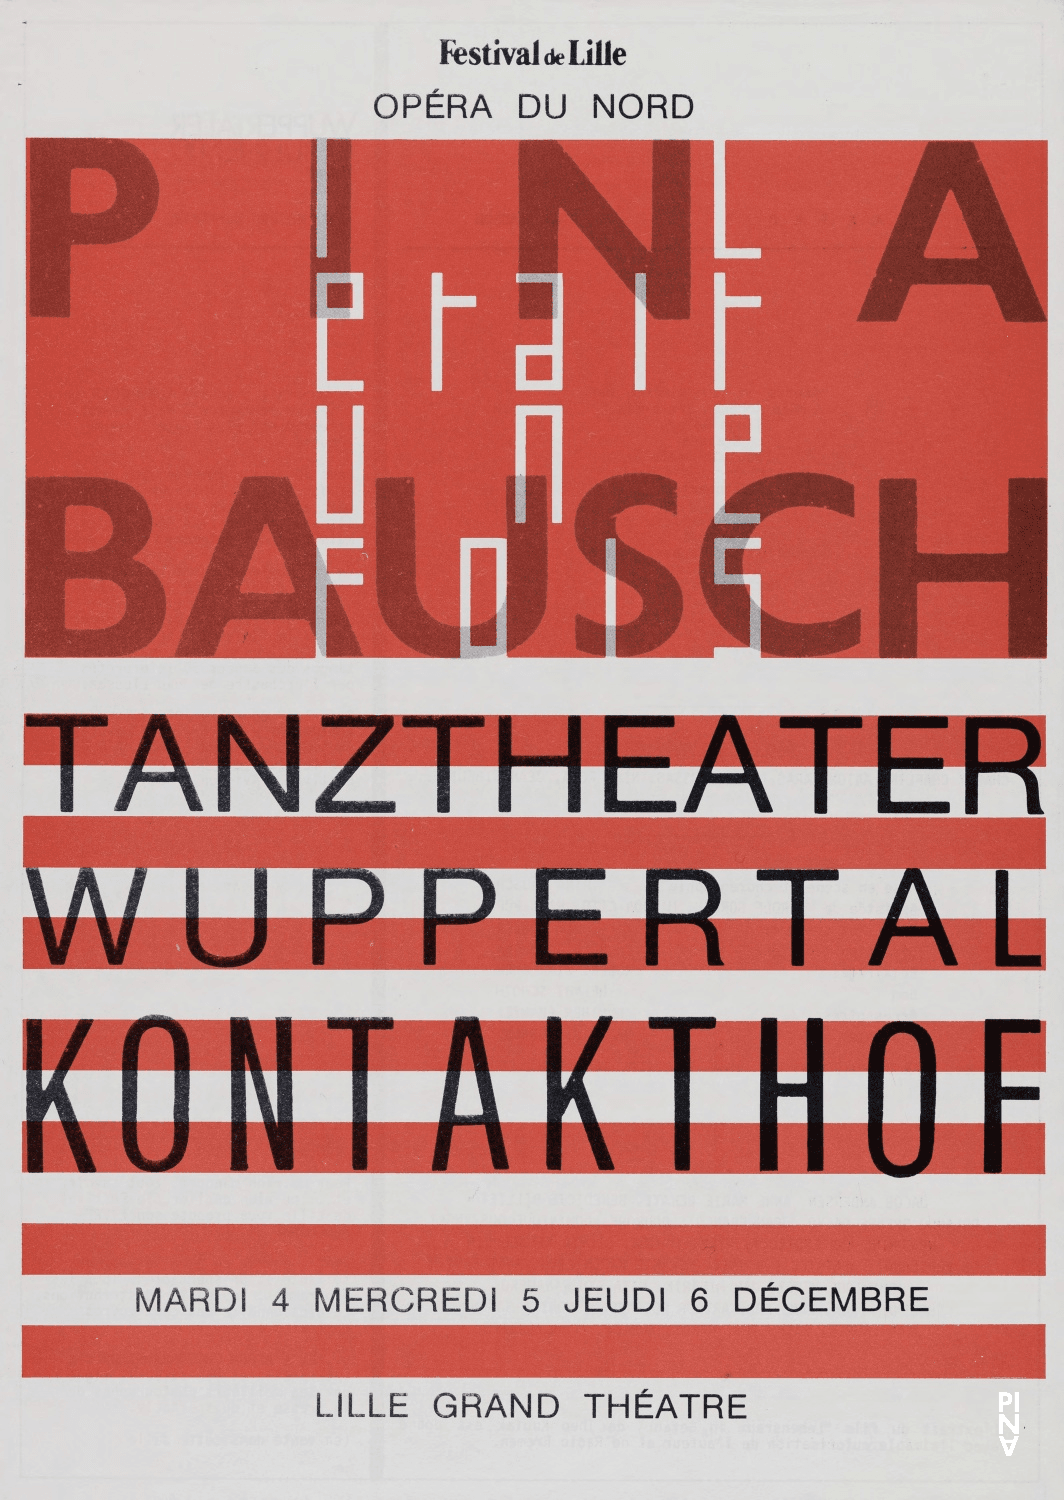 Programme pour « Kontakthof » de Pina Bausch avec Tanztheater Wuppertal à Lille, 4 déc. 1984 – 6 déc. 1984